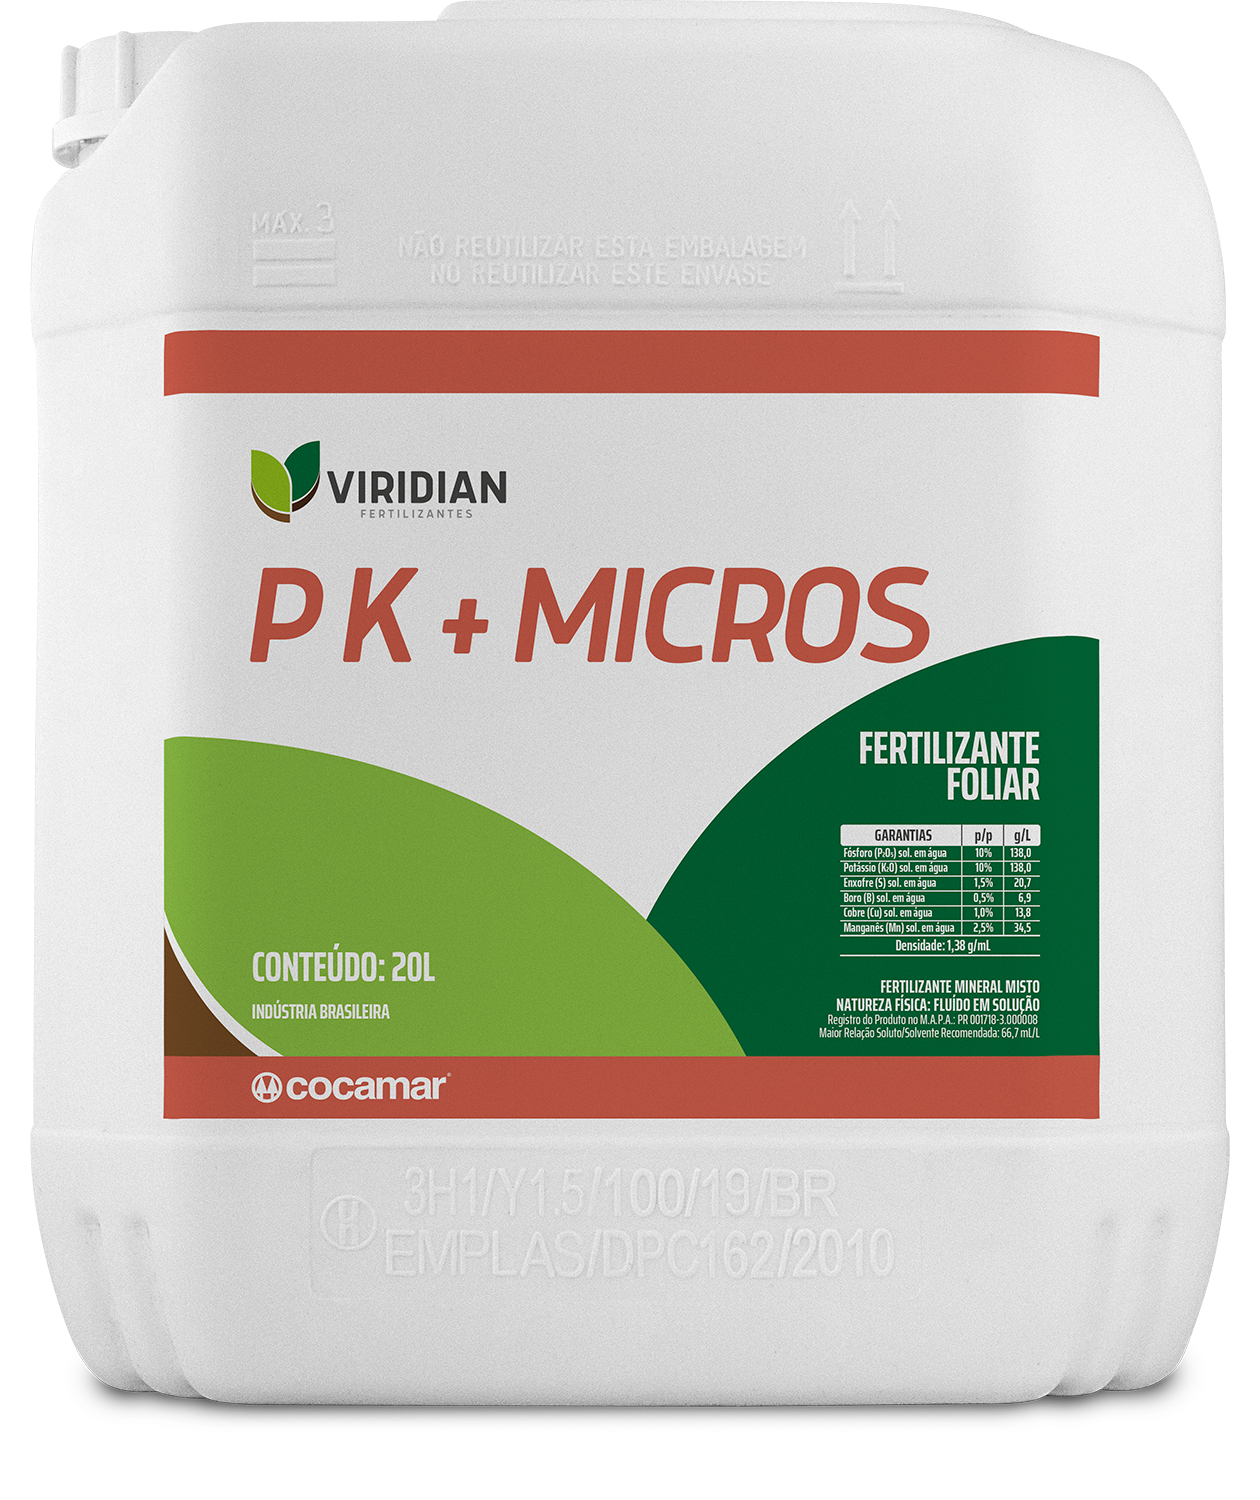 Embalagem Viridian P K + Micros